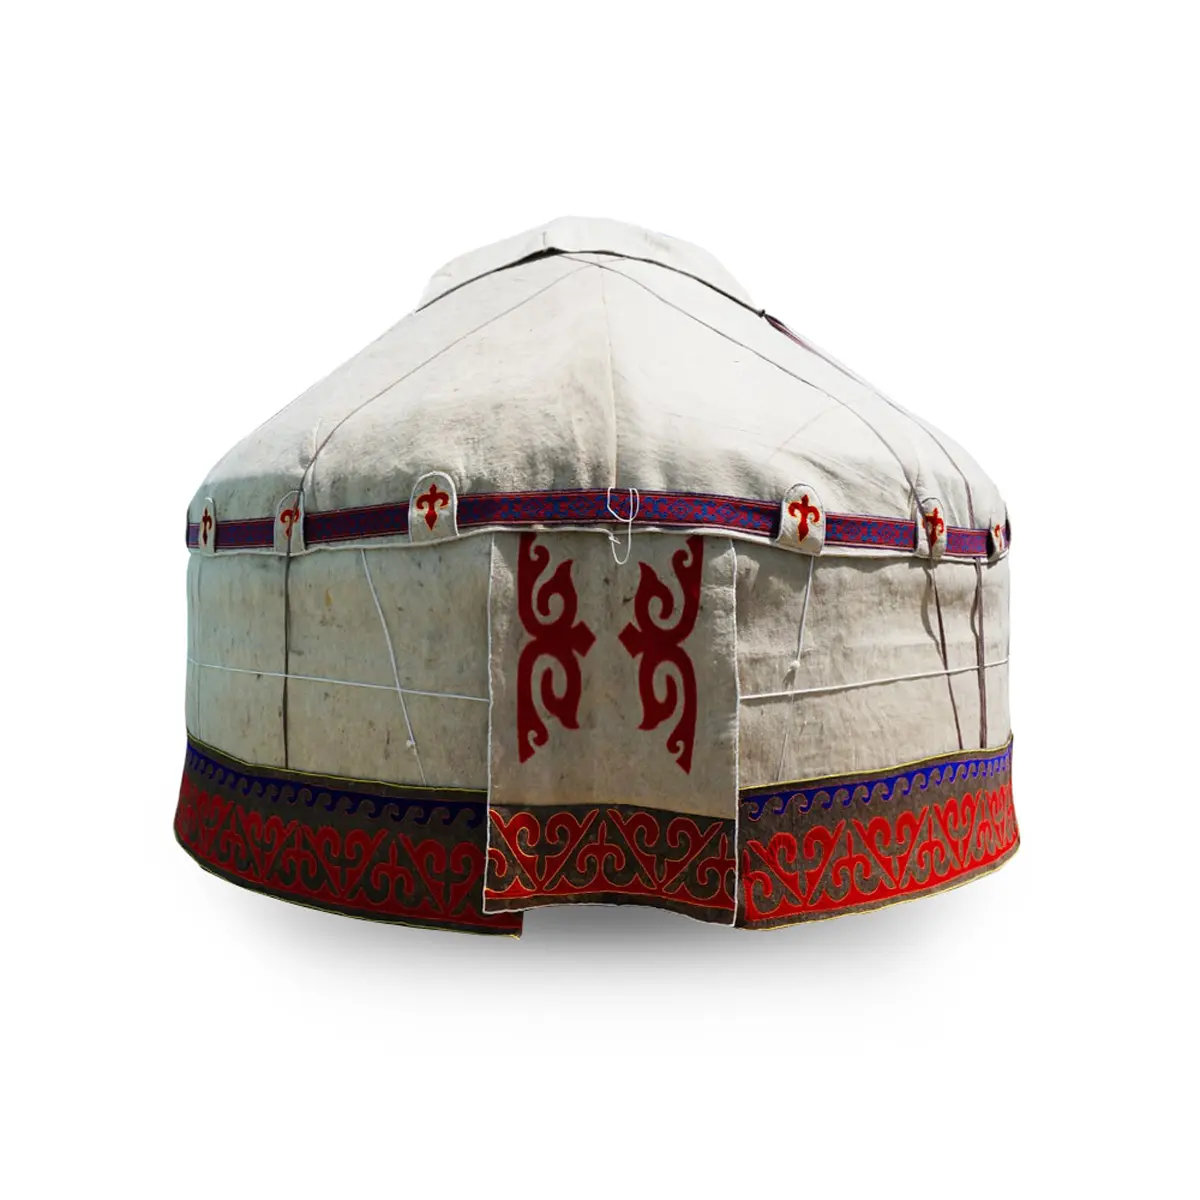 Diameter Rumah yurt tradisional Kazakhstan 9.2 meter terbuat dari bulu alami grosir dari produsen kayu